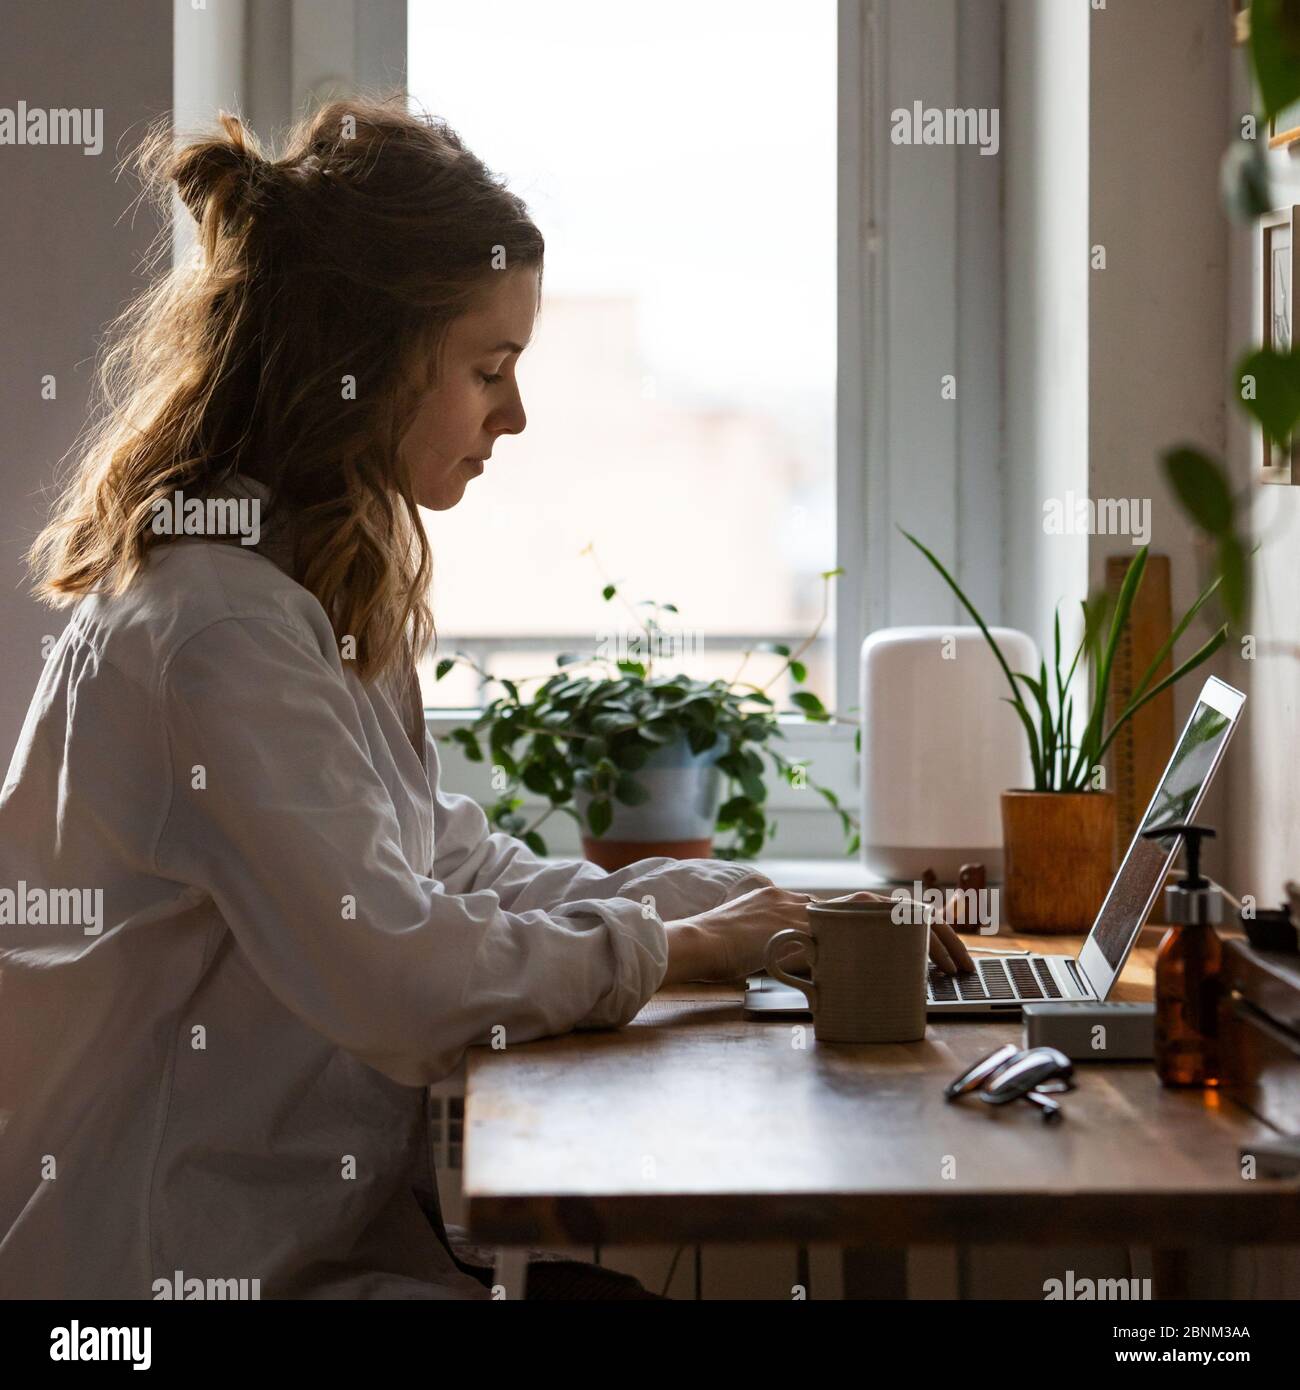 Junge Frau freiberufliche/Designer arbeitet am Computer aus dem Home Office während der Selbstisolierung durch Coronavirus. Gemütlicher Arbeitsplatz umgeben von Pflanzen. Re Stockfoto